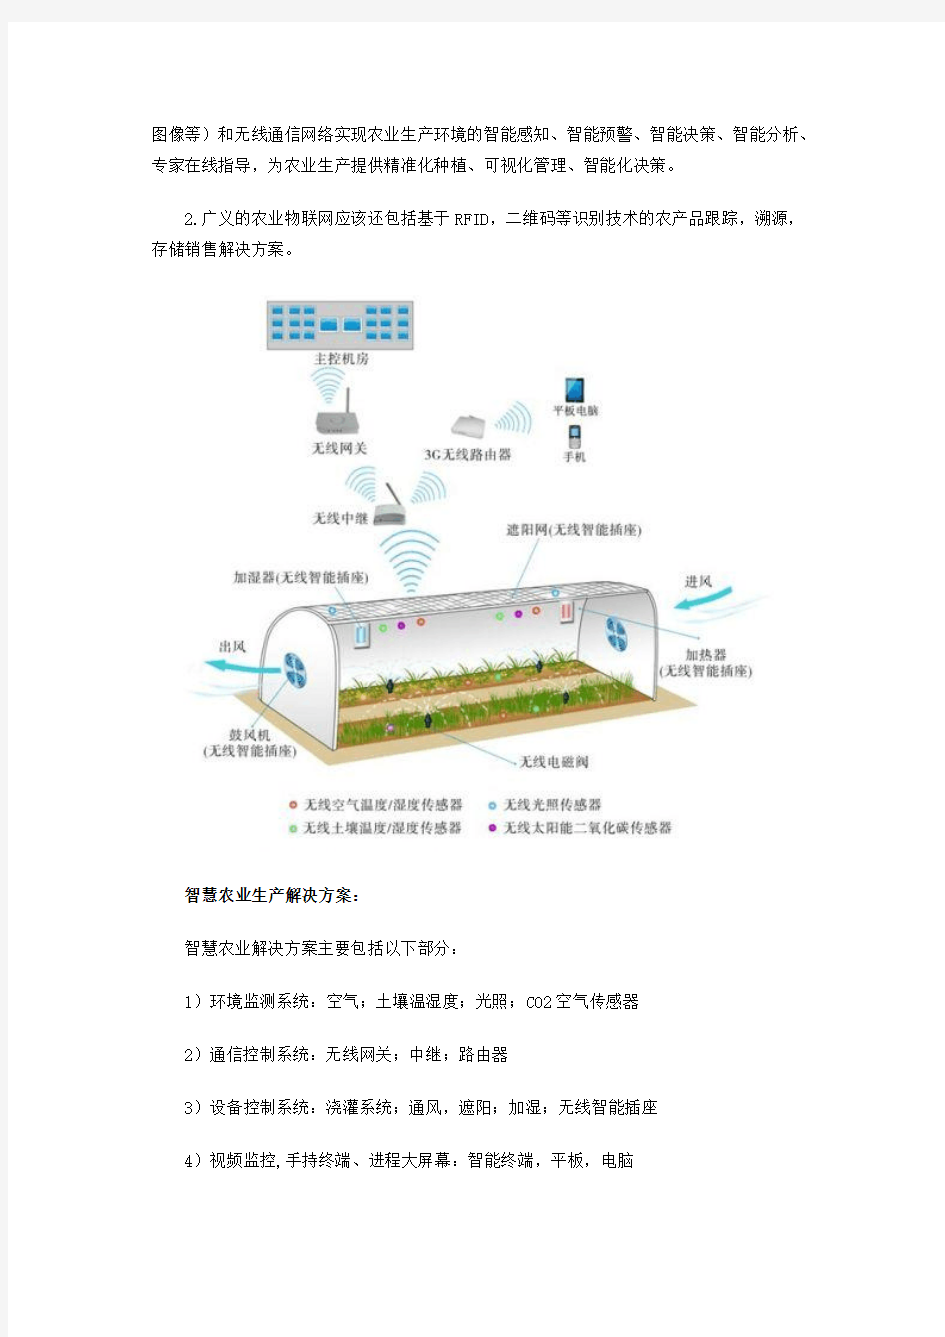 农业物联网环境监控ZigBee无线监控系统技术方案(北京盛世宏博科技有限公司)